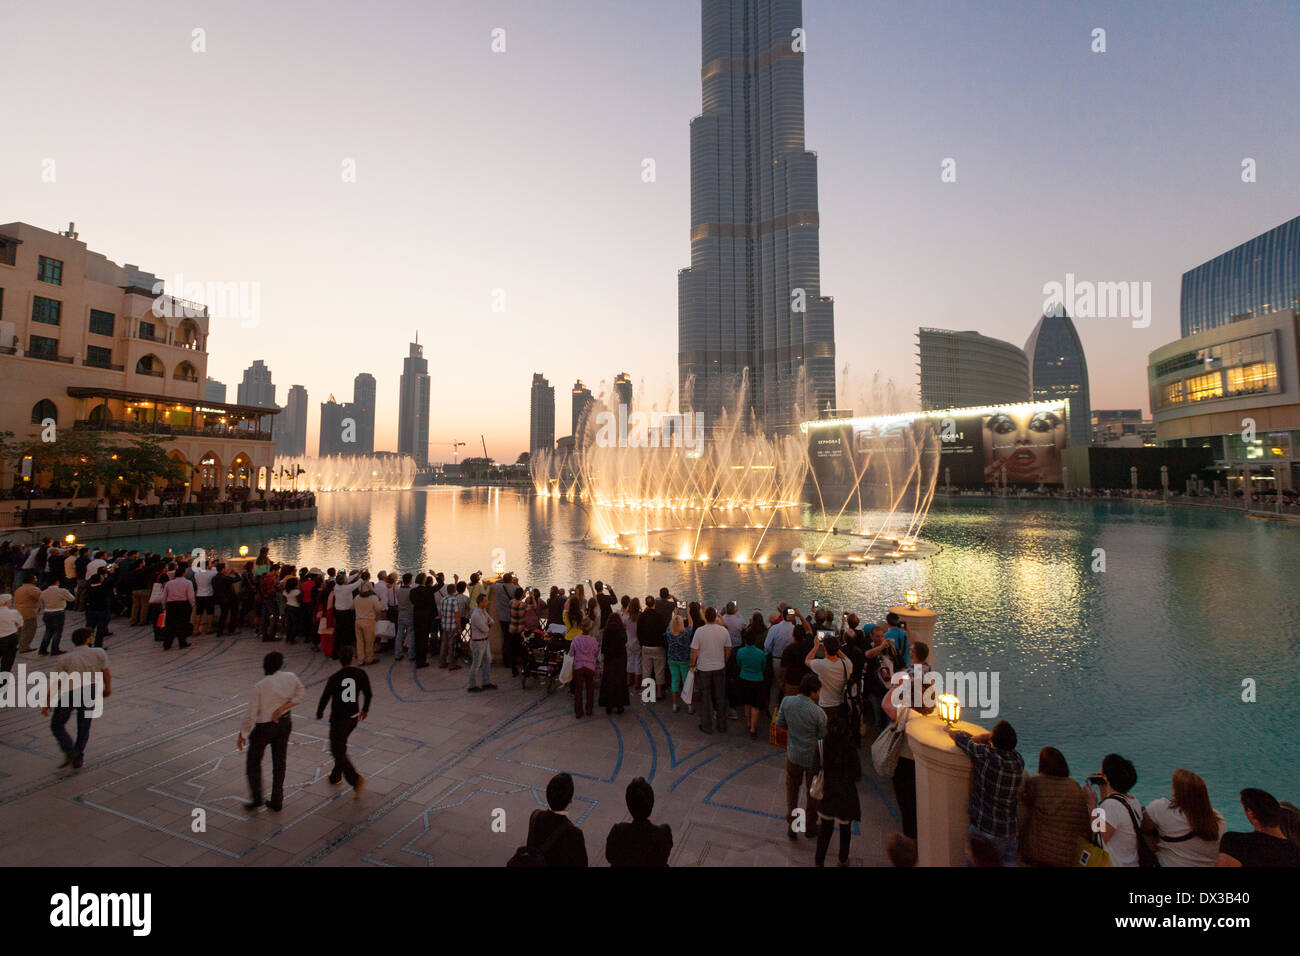 Dubai fountain and the Burj Khalifa at sunset, Dubai Mall and fountains, UAE, United Arab Emirates, Middle East Stock Photo